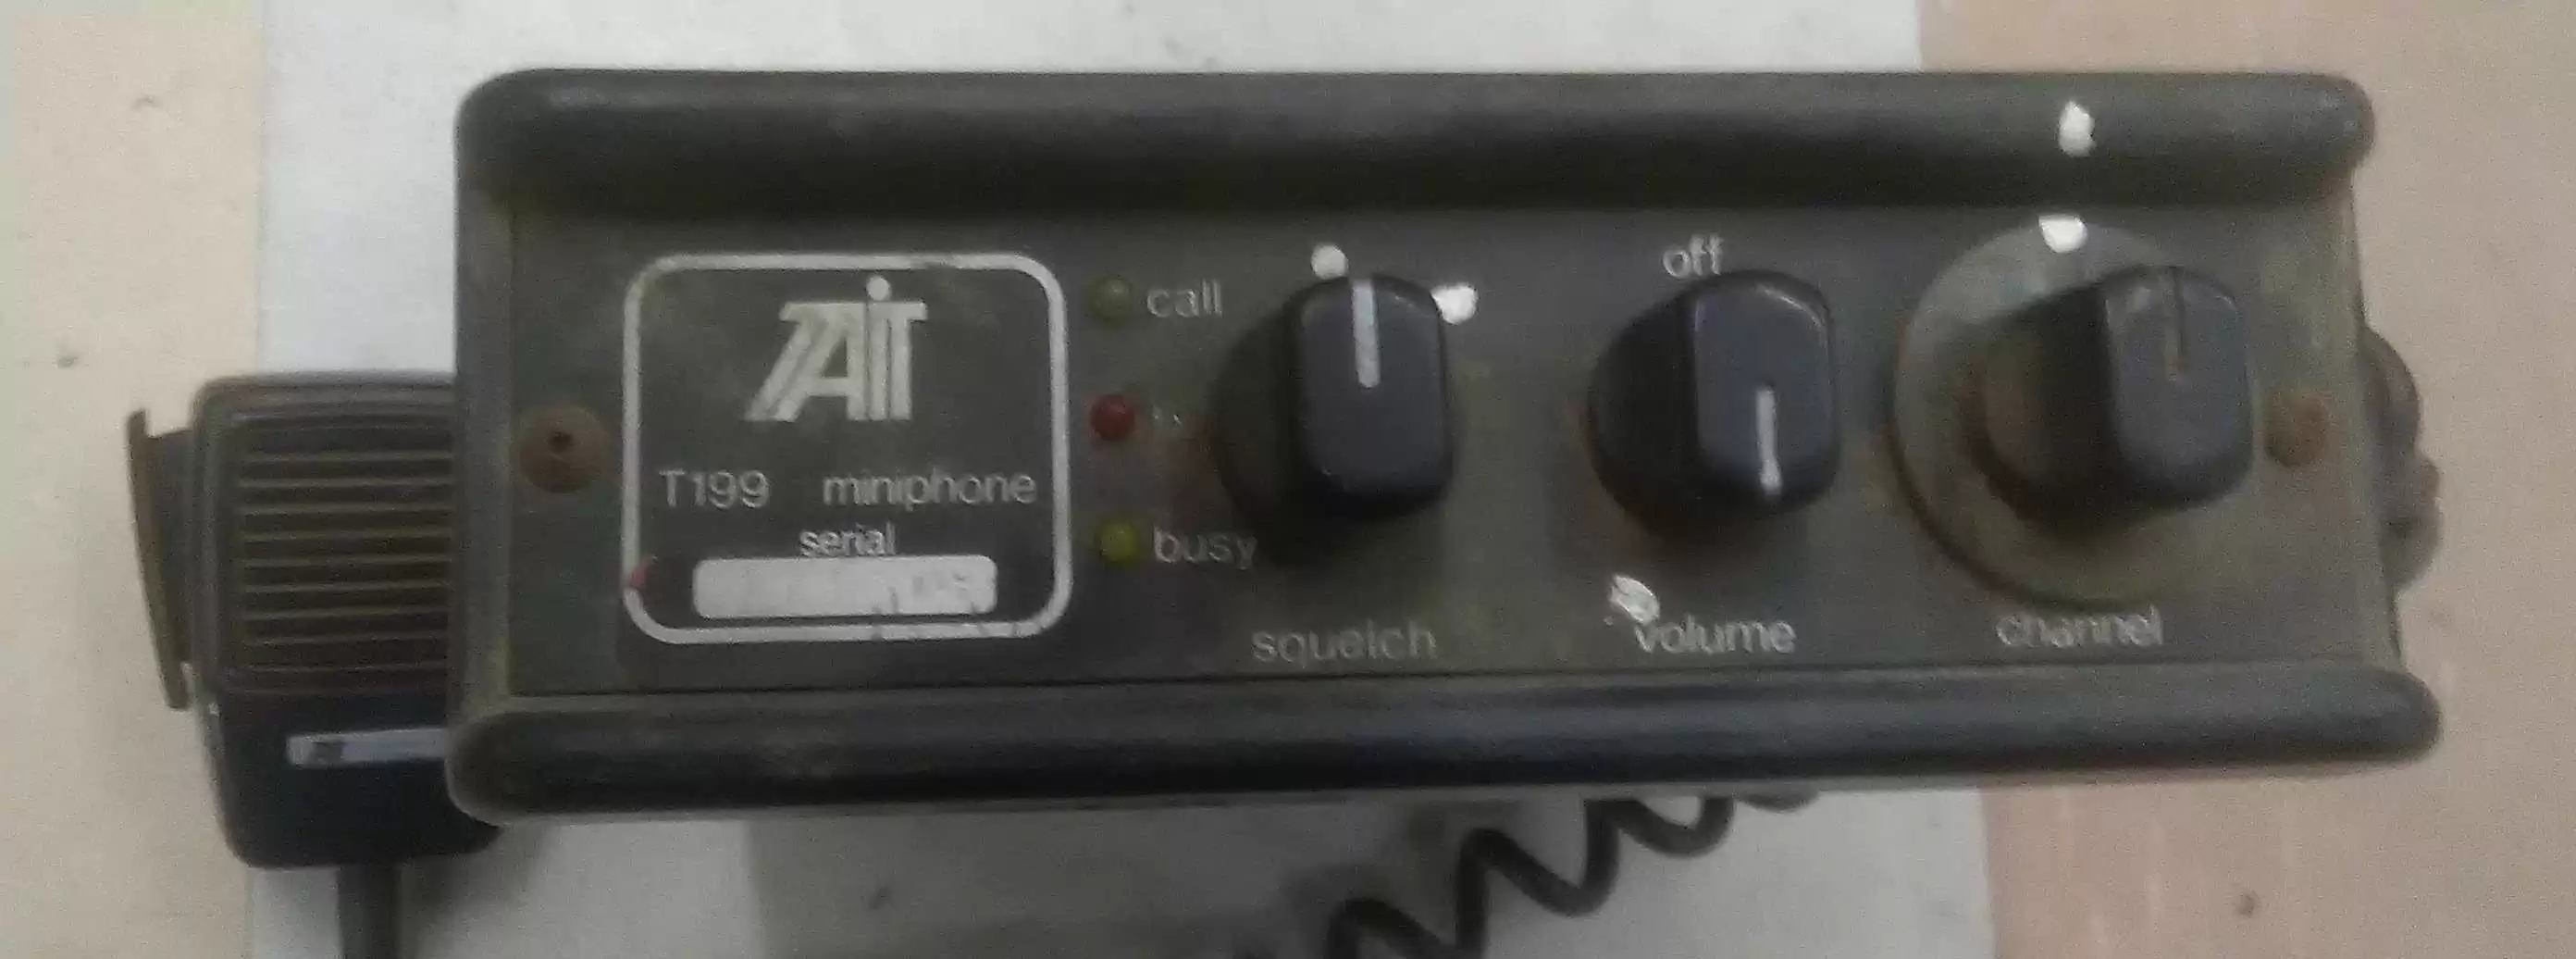 Slapper af Produktionscenter Rejse Are You Still Using Old VHF Radios? | Radphone.